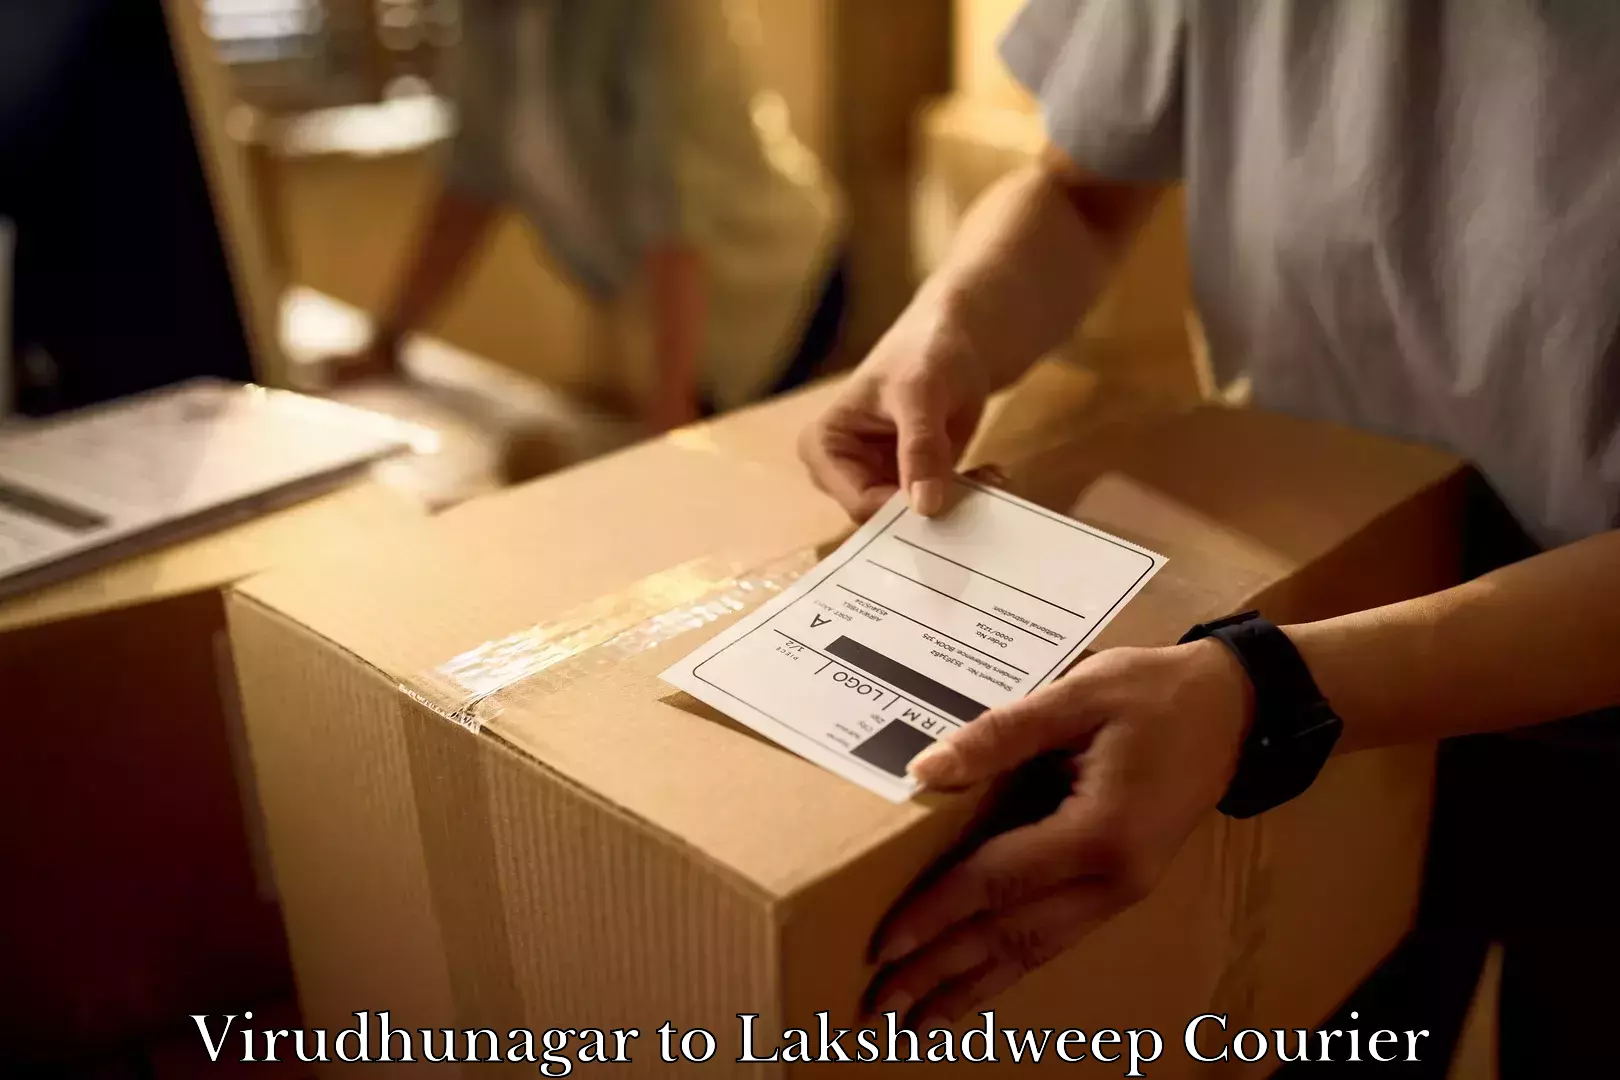 Furniture moving experts Virudhunagar to Lakshadweep